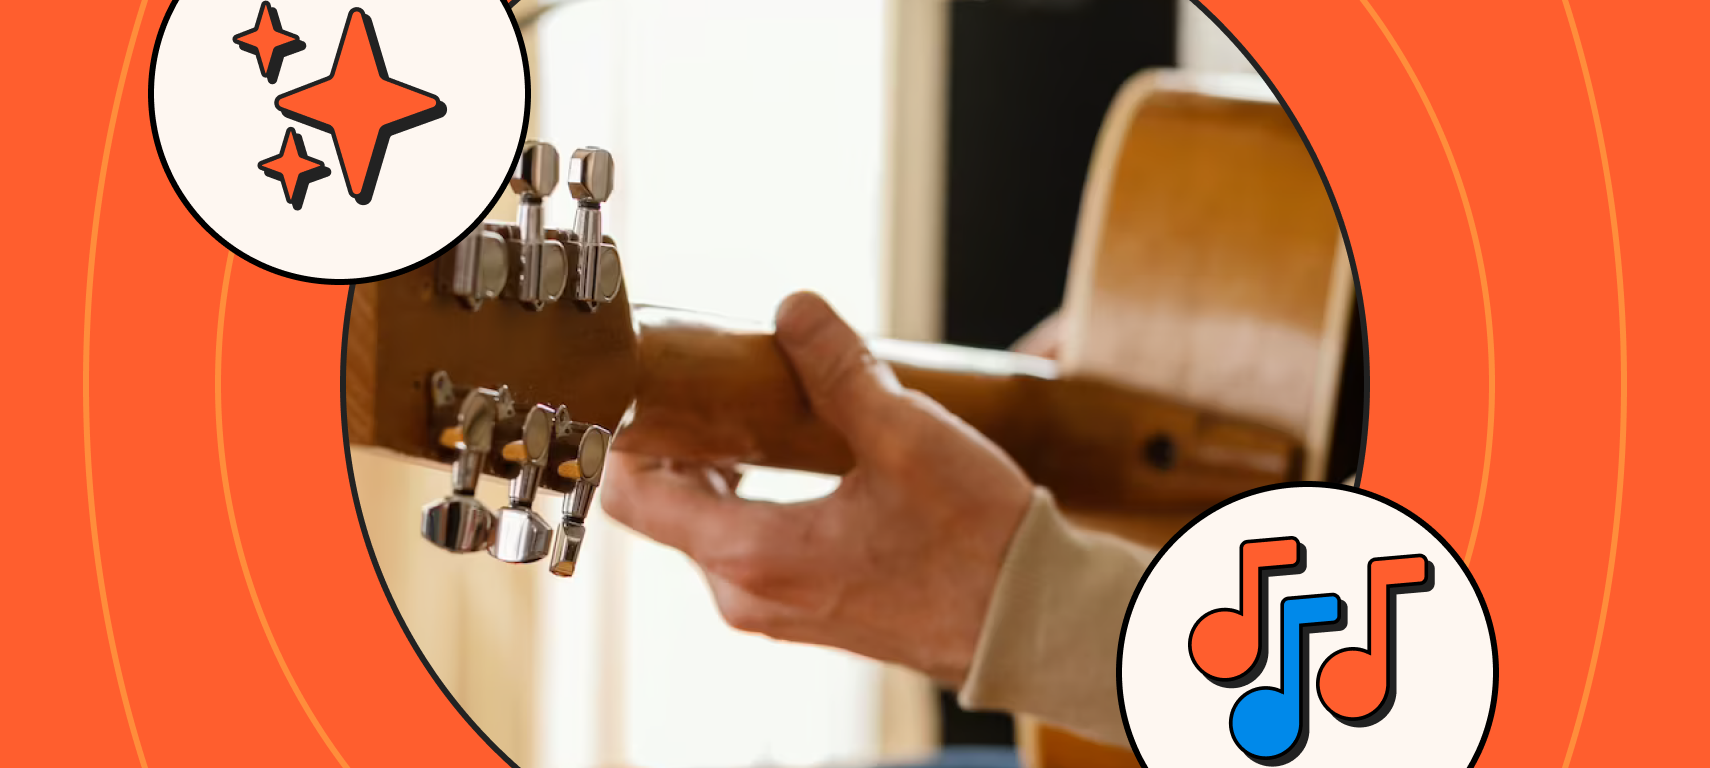 20 músicas evangélicas para tocar no violão | Blog do Cifra Club | Flipboard